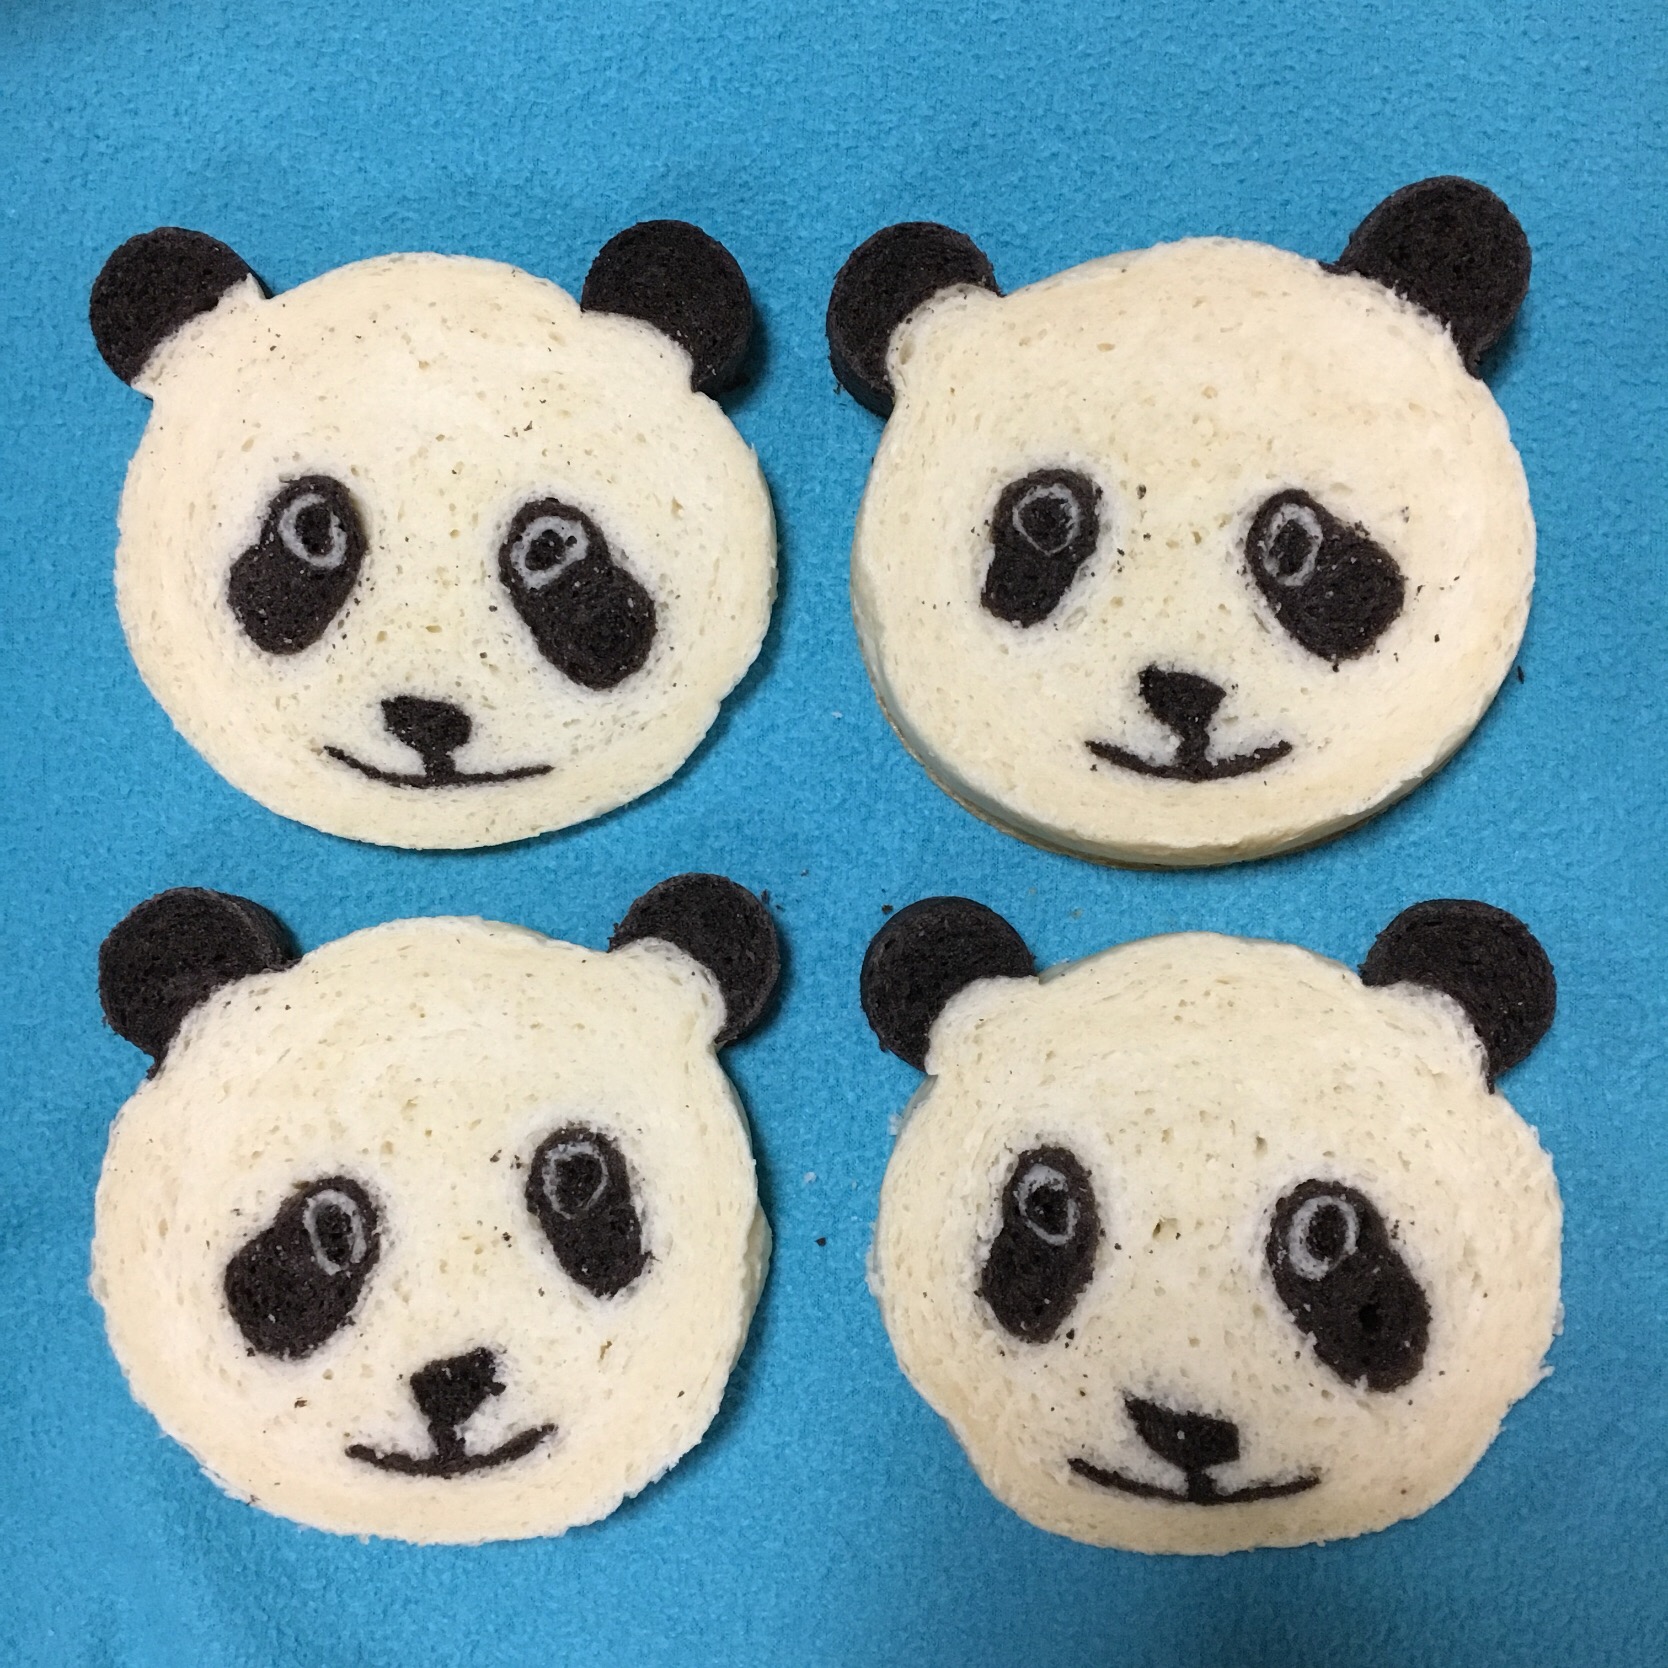 パンダのイラストパン パン焼き型 クマ で焼きました 手作りパン 食パン デコパン パン イラストパンパンダパンダパンクマ型 Izuyo Snapdish スナップディッシュ Id G1awva